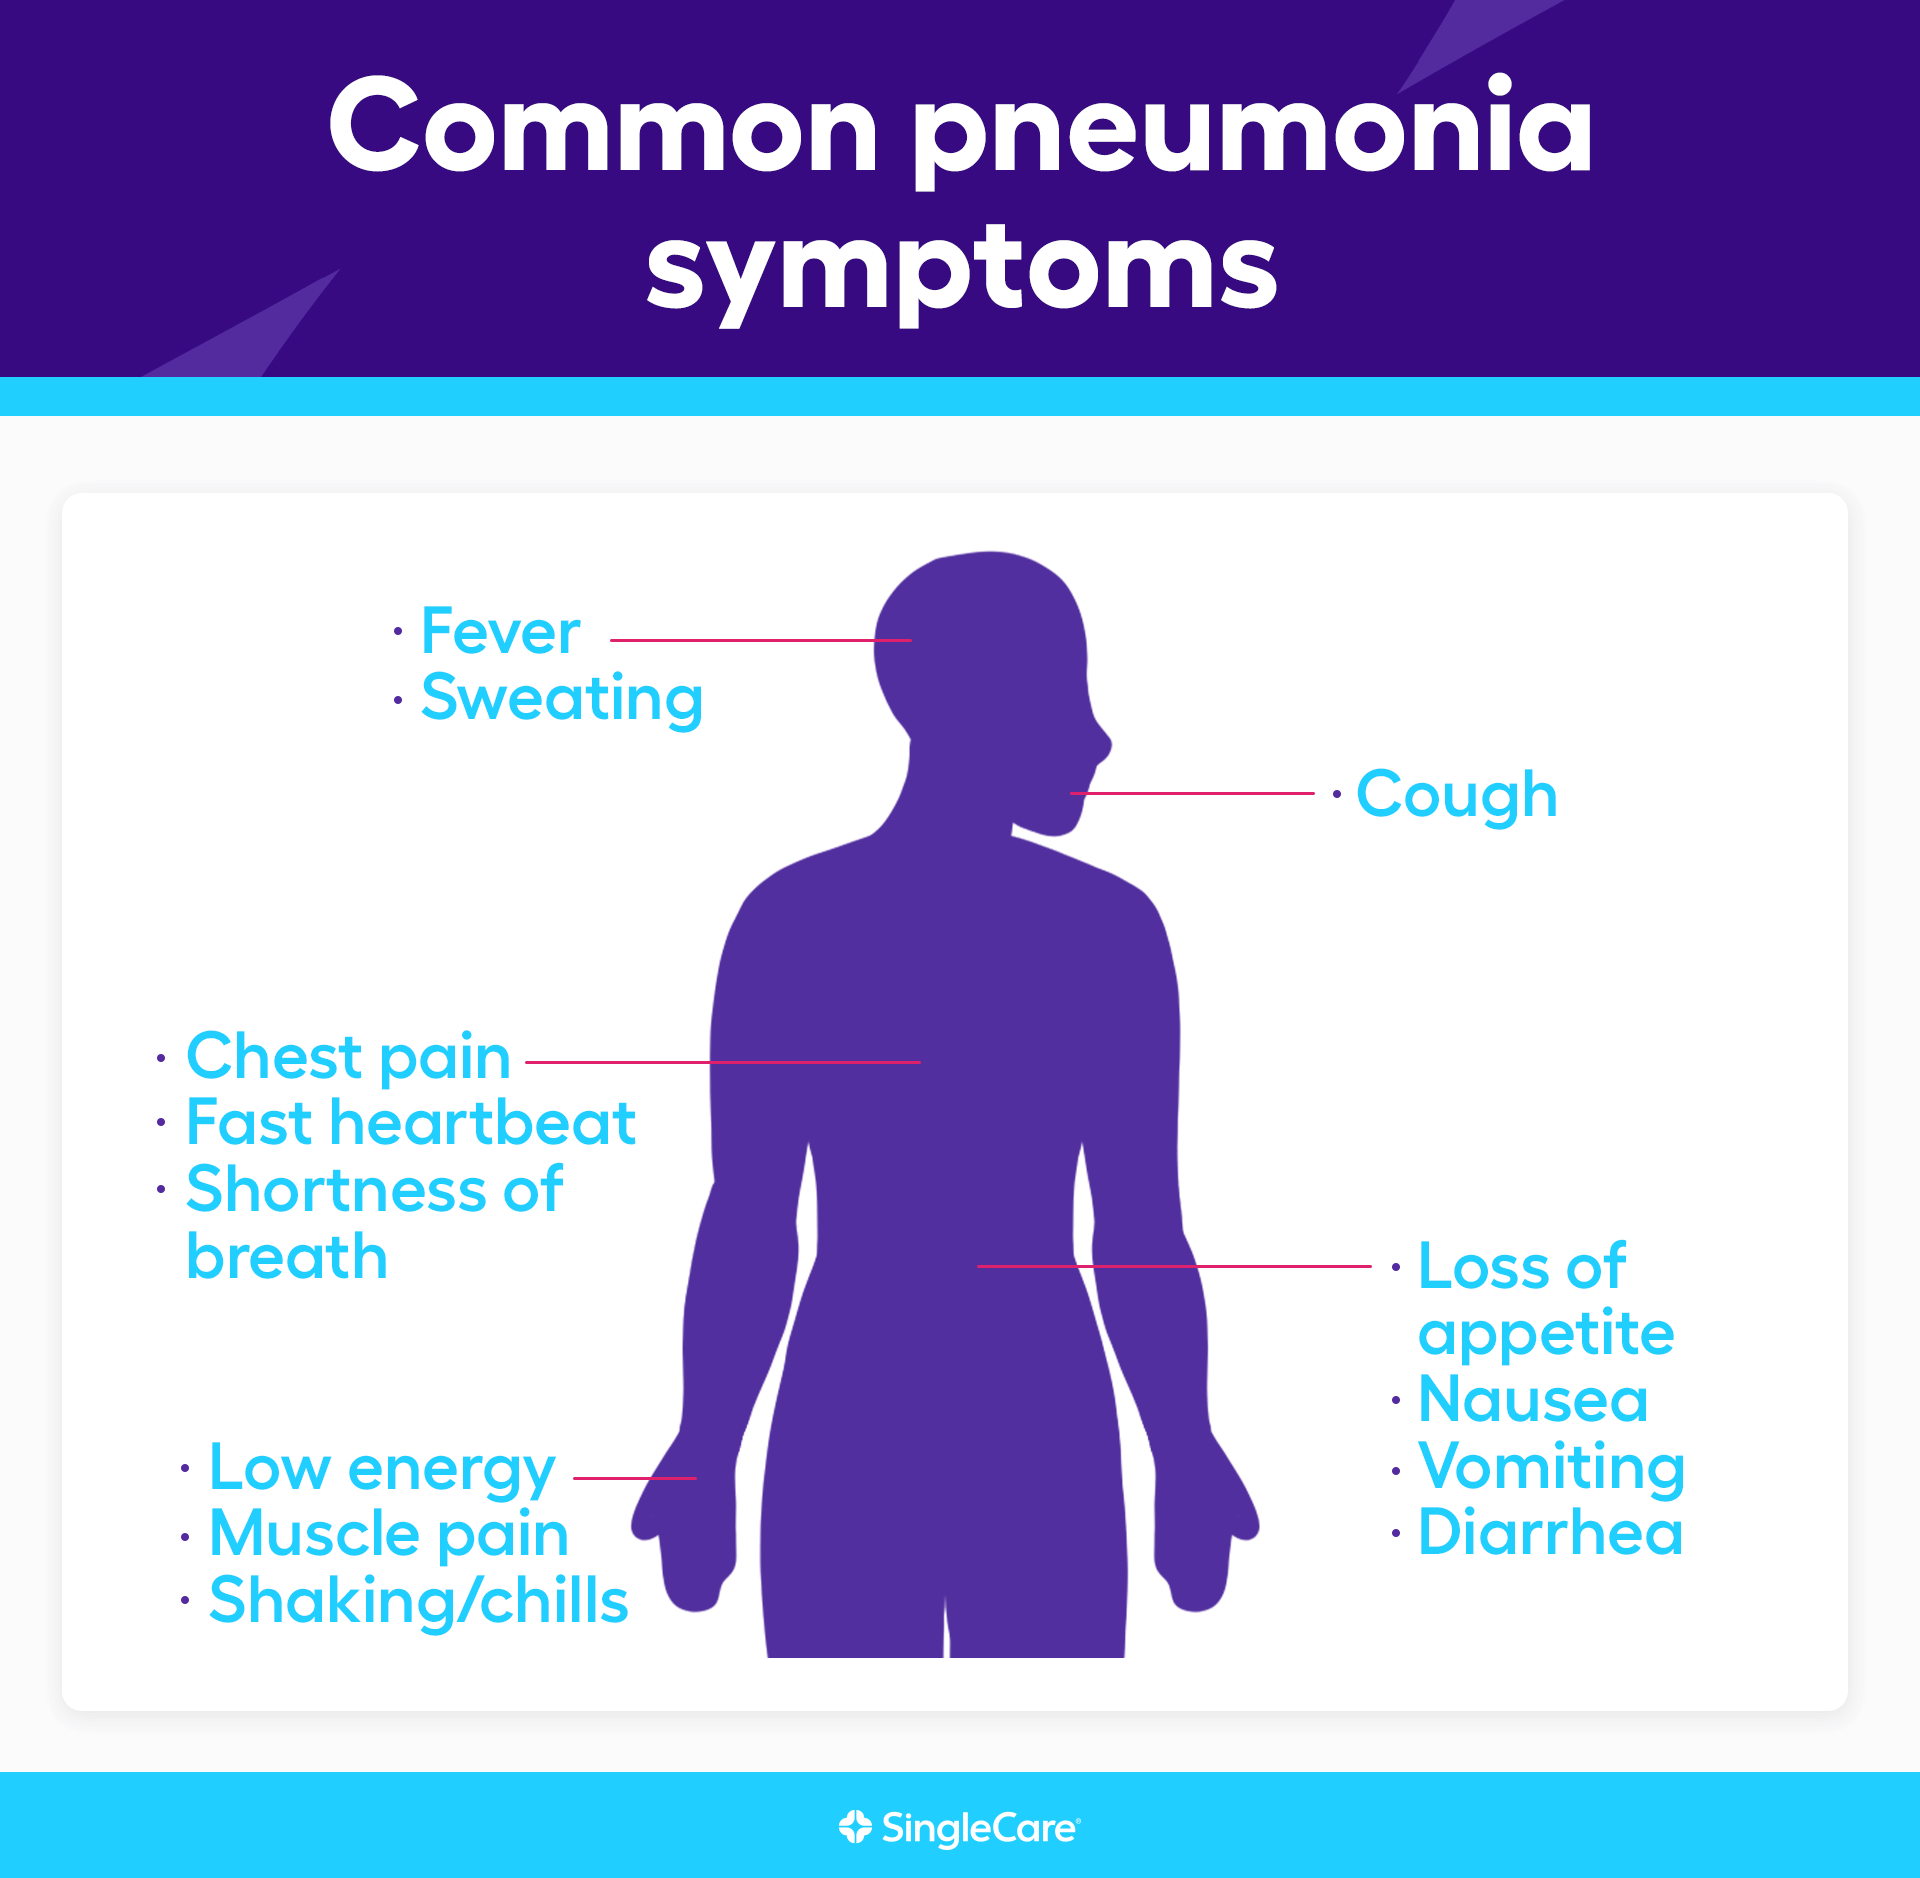 Image showing pneumonia symptoms